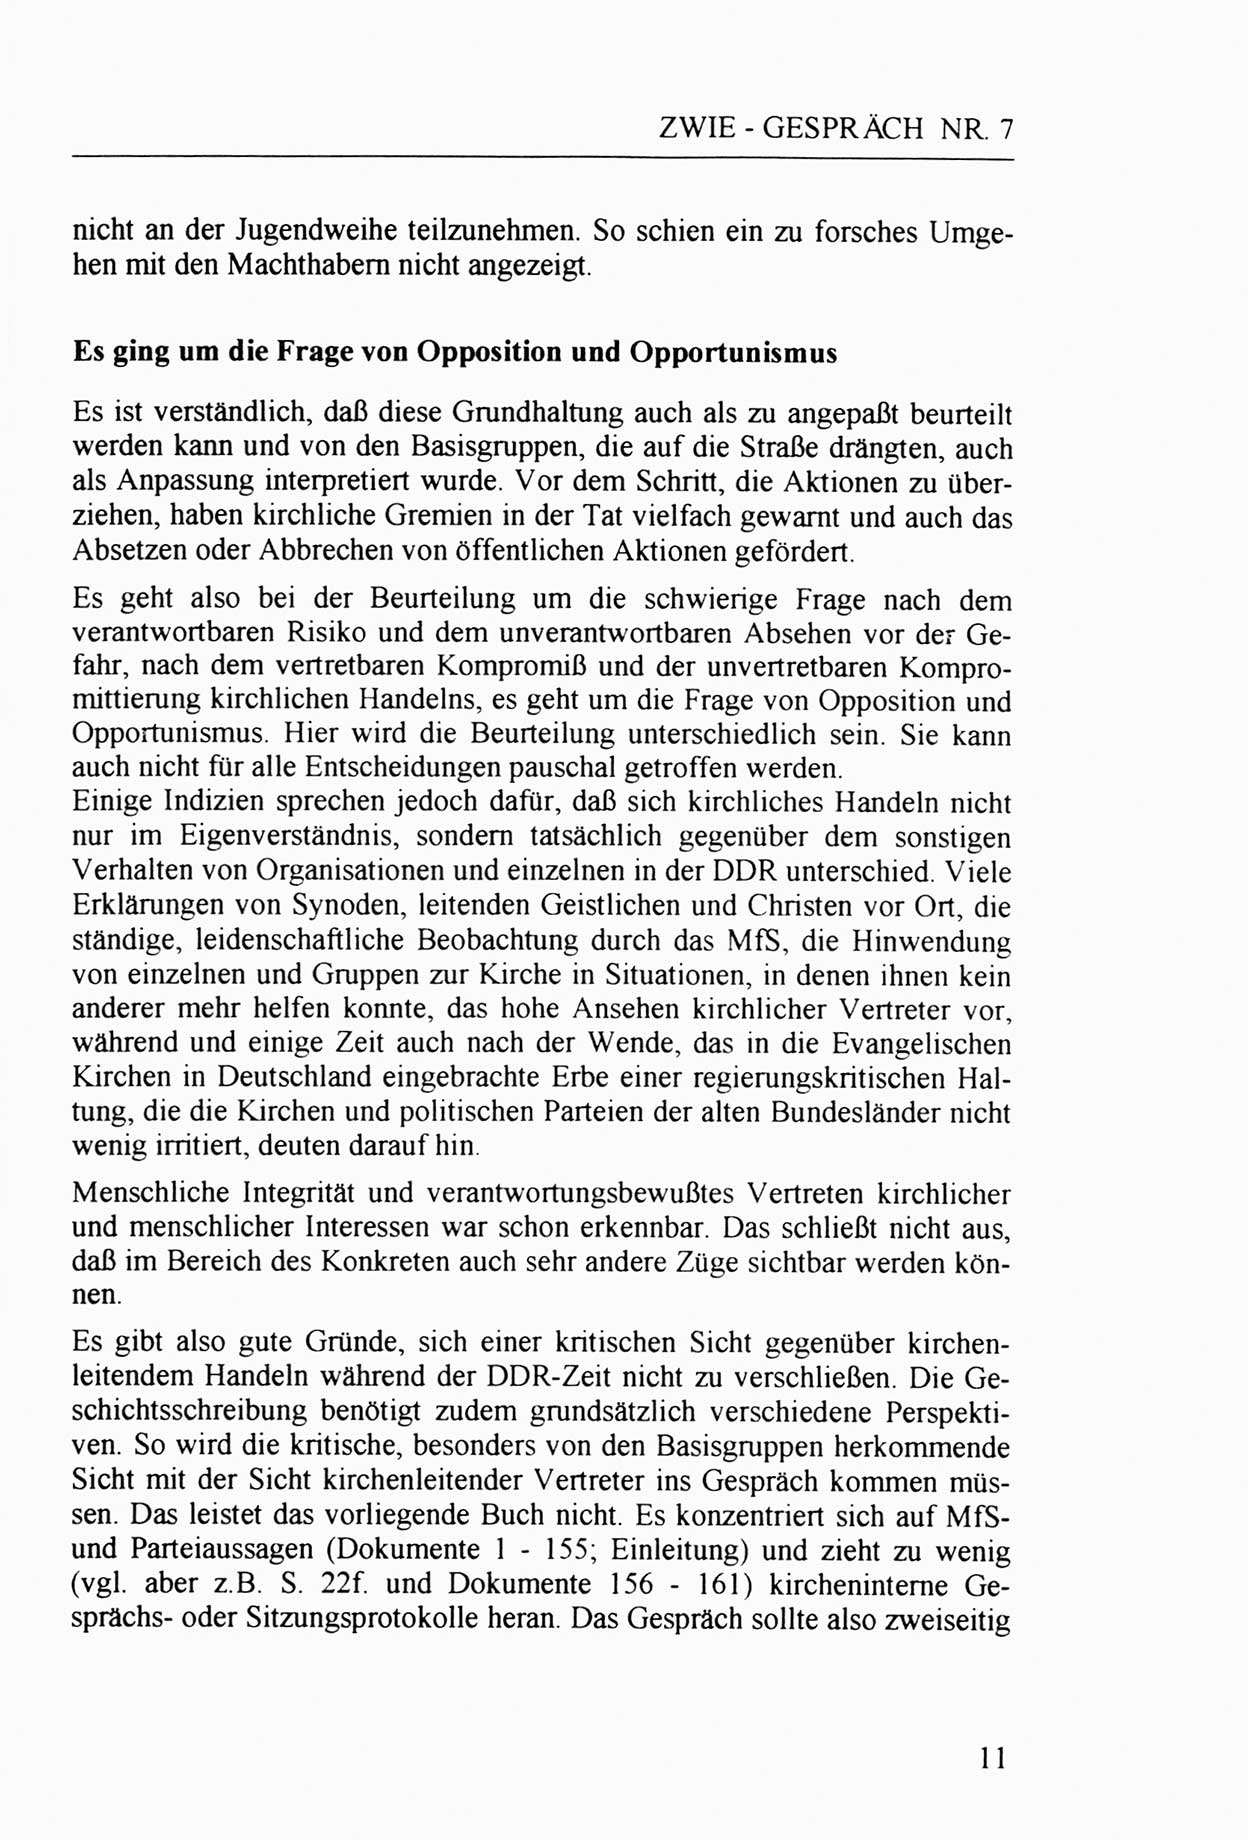 Zwie-Gespräch, Beiträge zur Aufarbeitung der Staatssicherheits-Vergangenheit [Deutsche Demokratische Republik (DDR)], Ausgabe Nr. 7, Berlin 1992, Seite 11 (Zwie-Gespr. Ausg. 7 1992, S. 11)